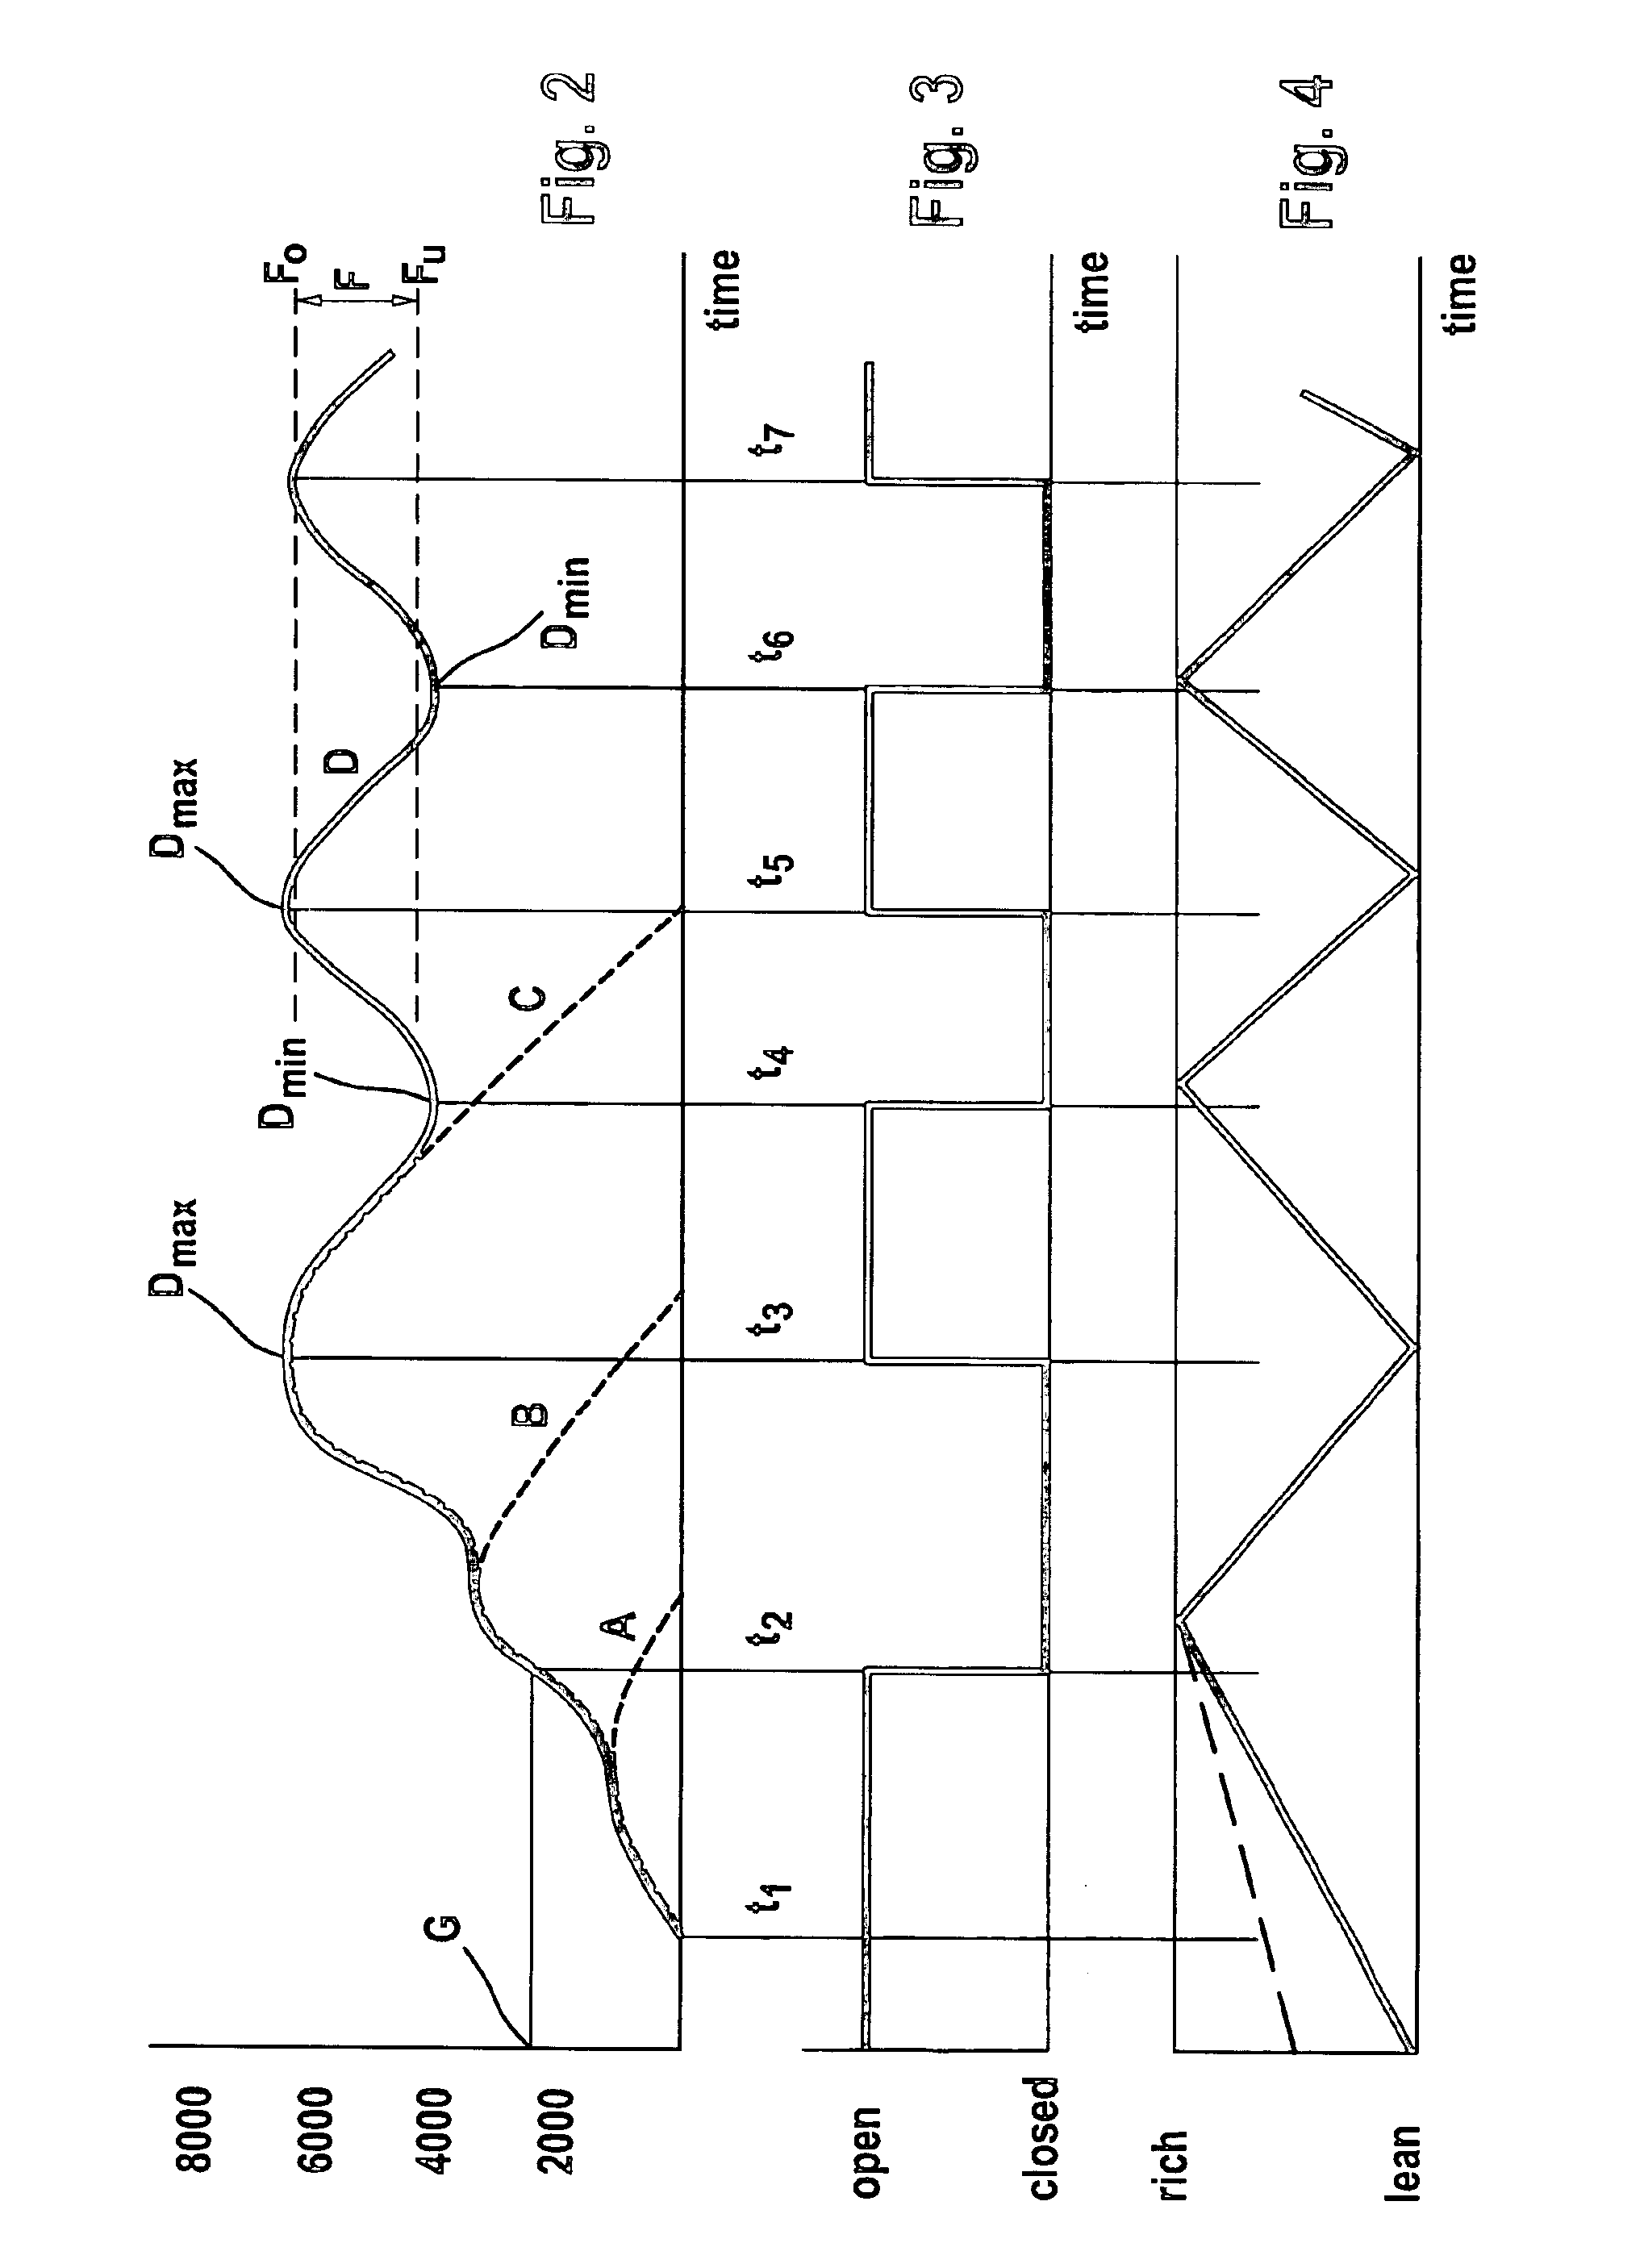 Carburetor arrangement for an internal combustion engine